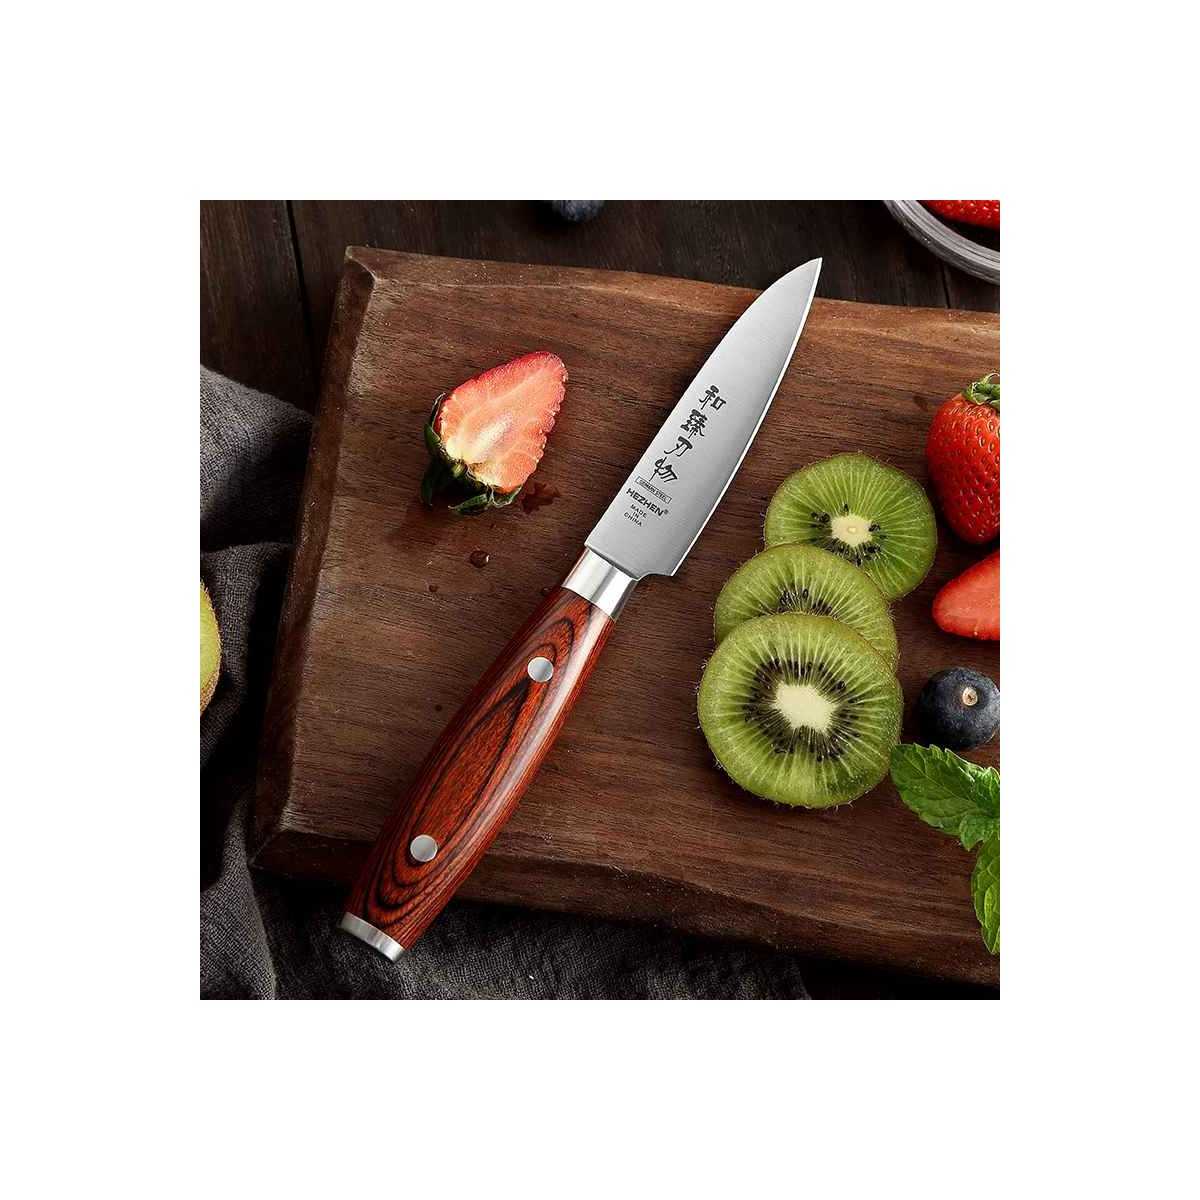 Hezhen Paring Knife 3.5 Inch